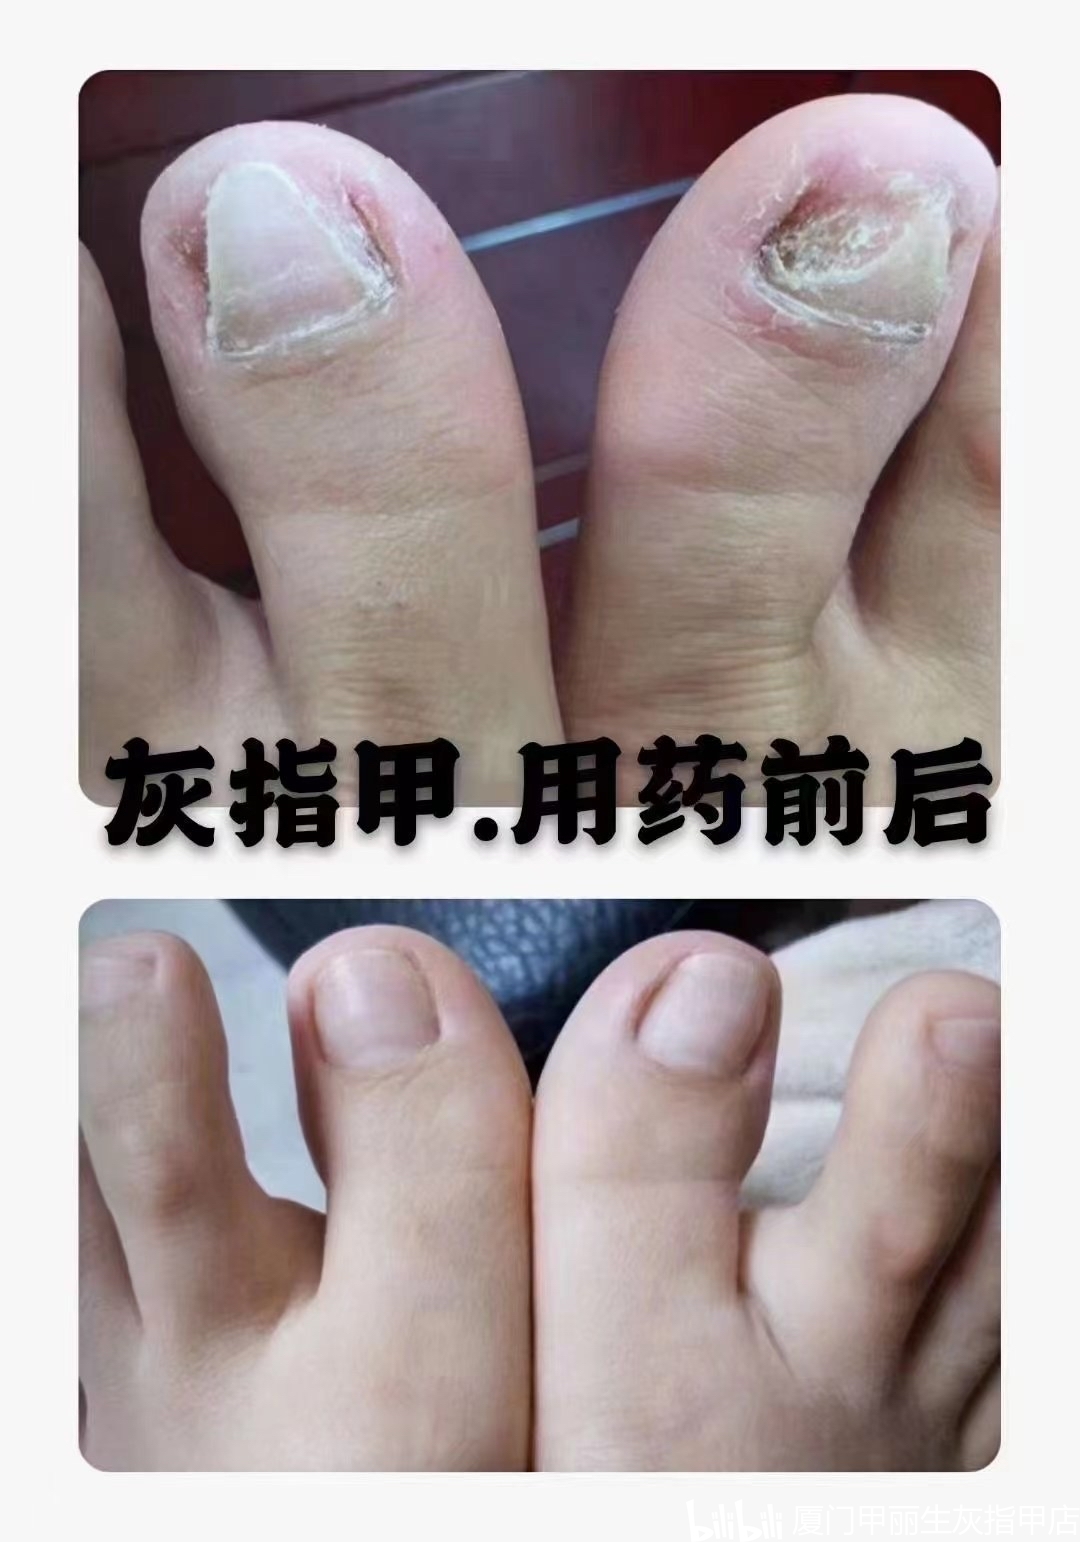 灰指甲治疗前后对比图